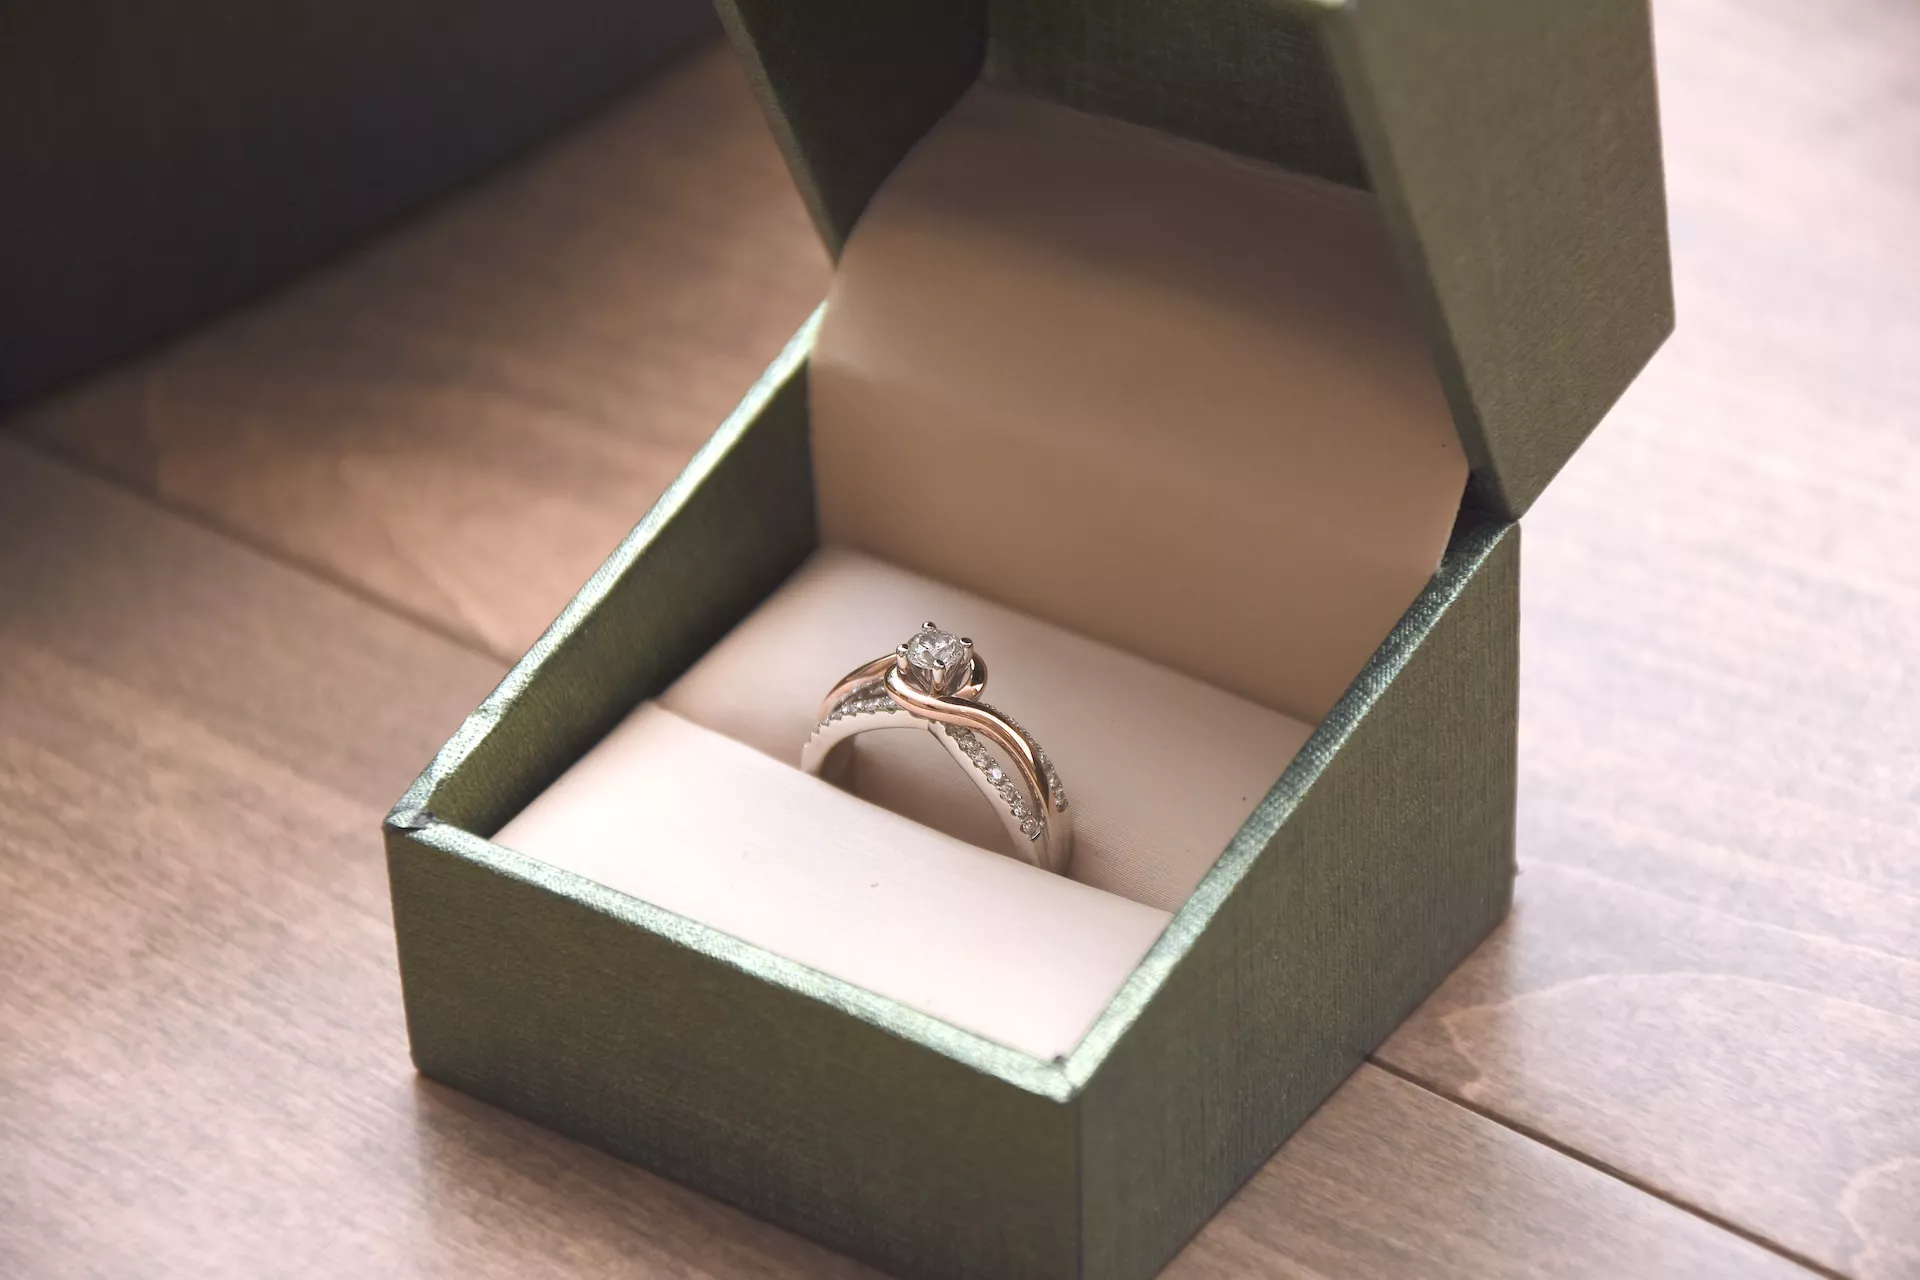 訂婚戒指是中心鑲有主要鑽石的戒指款式。